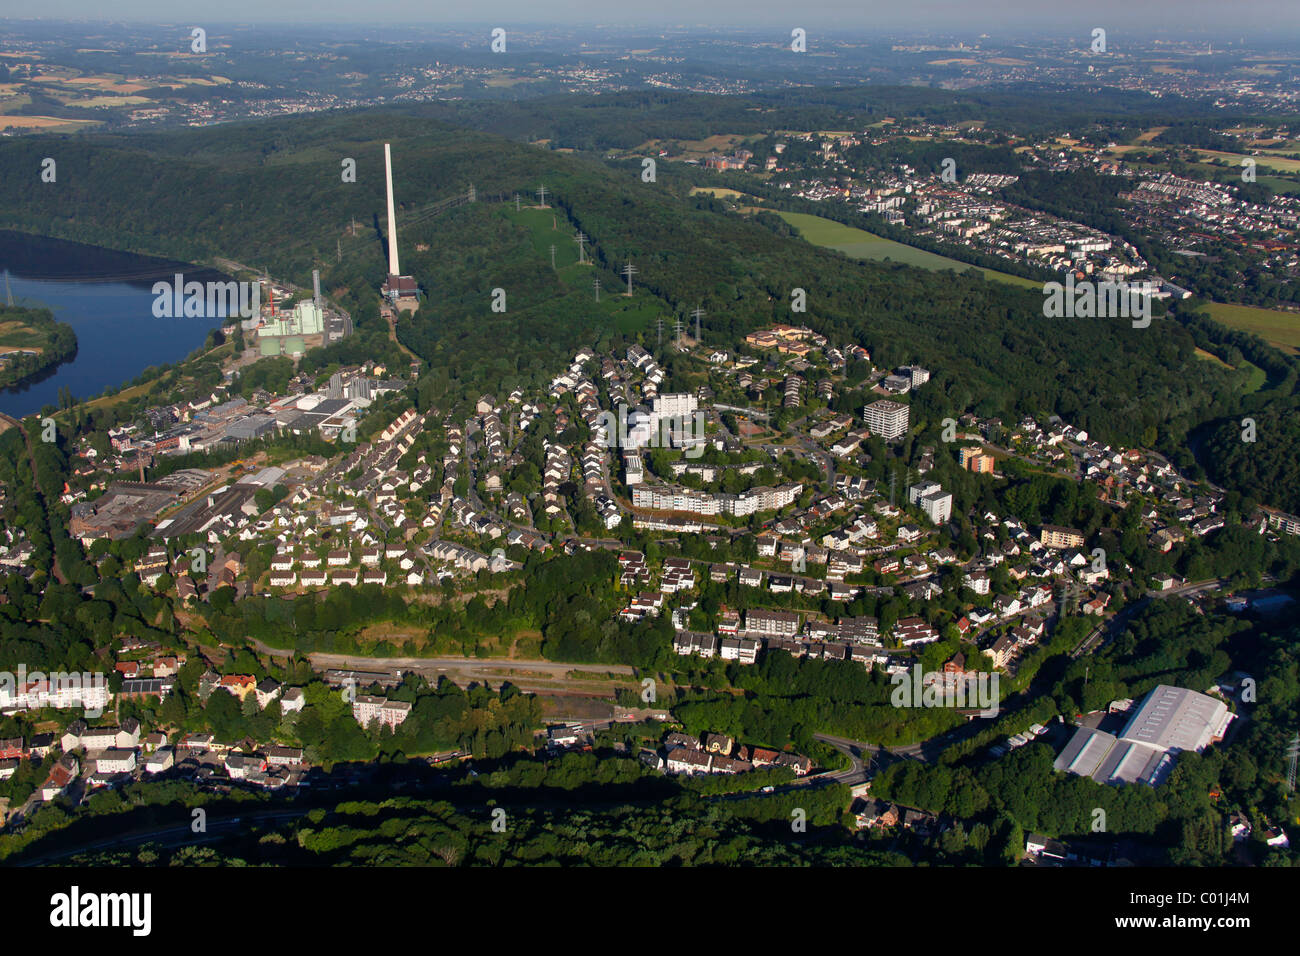 Vue aérienne, Herdecke, région de la Ruhr, Nordrhein-Westfalen, Germany, Europe Banque D'Images